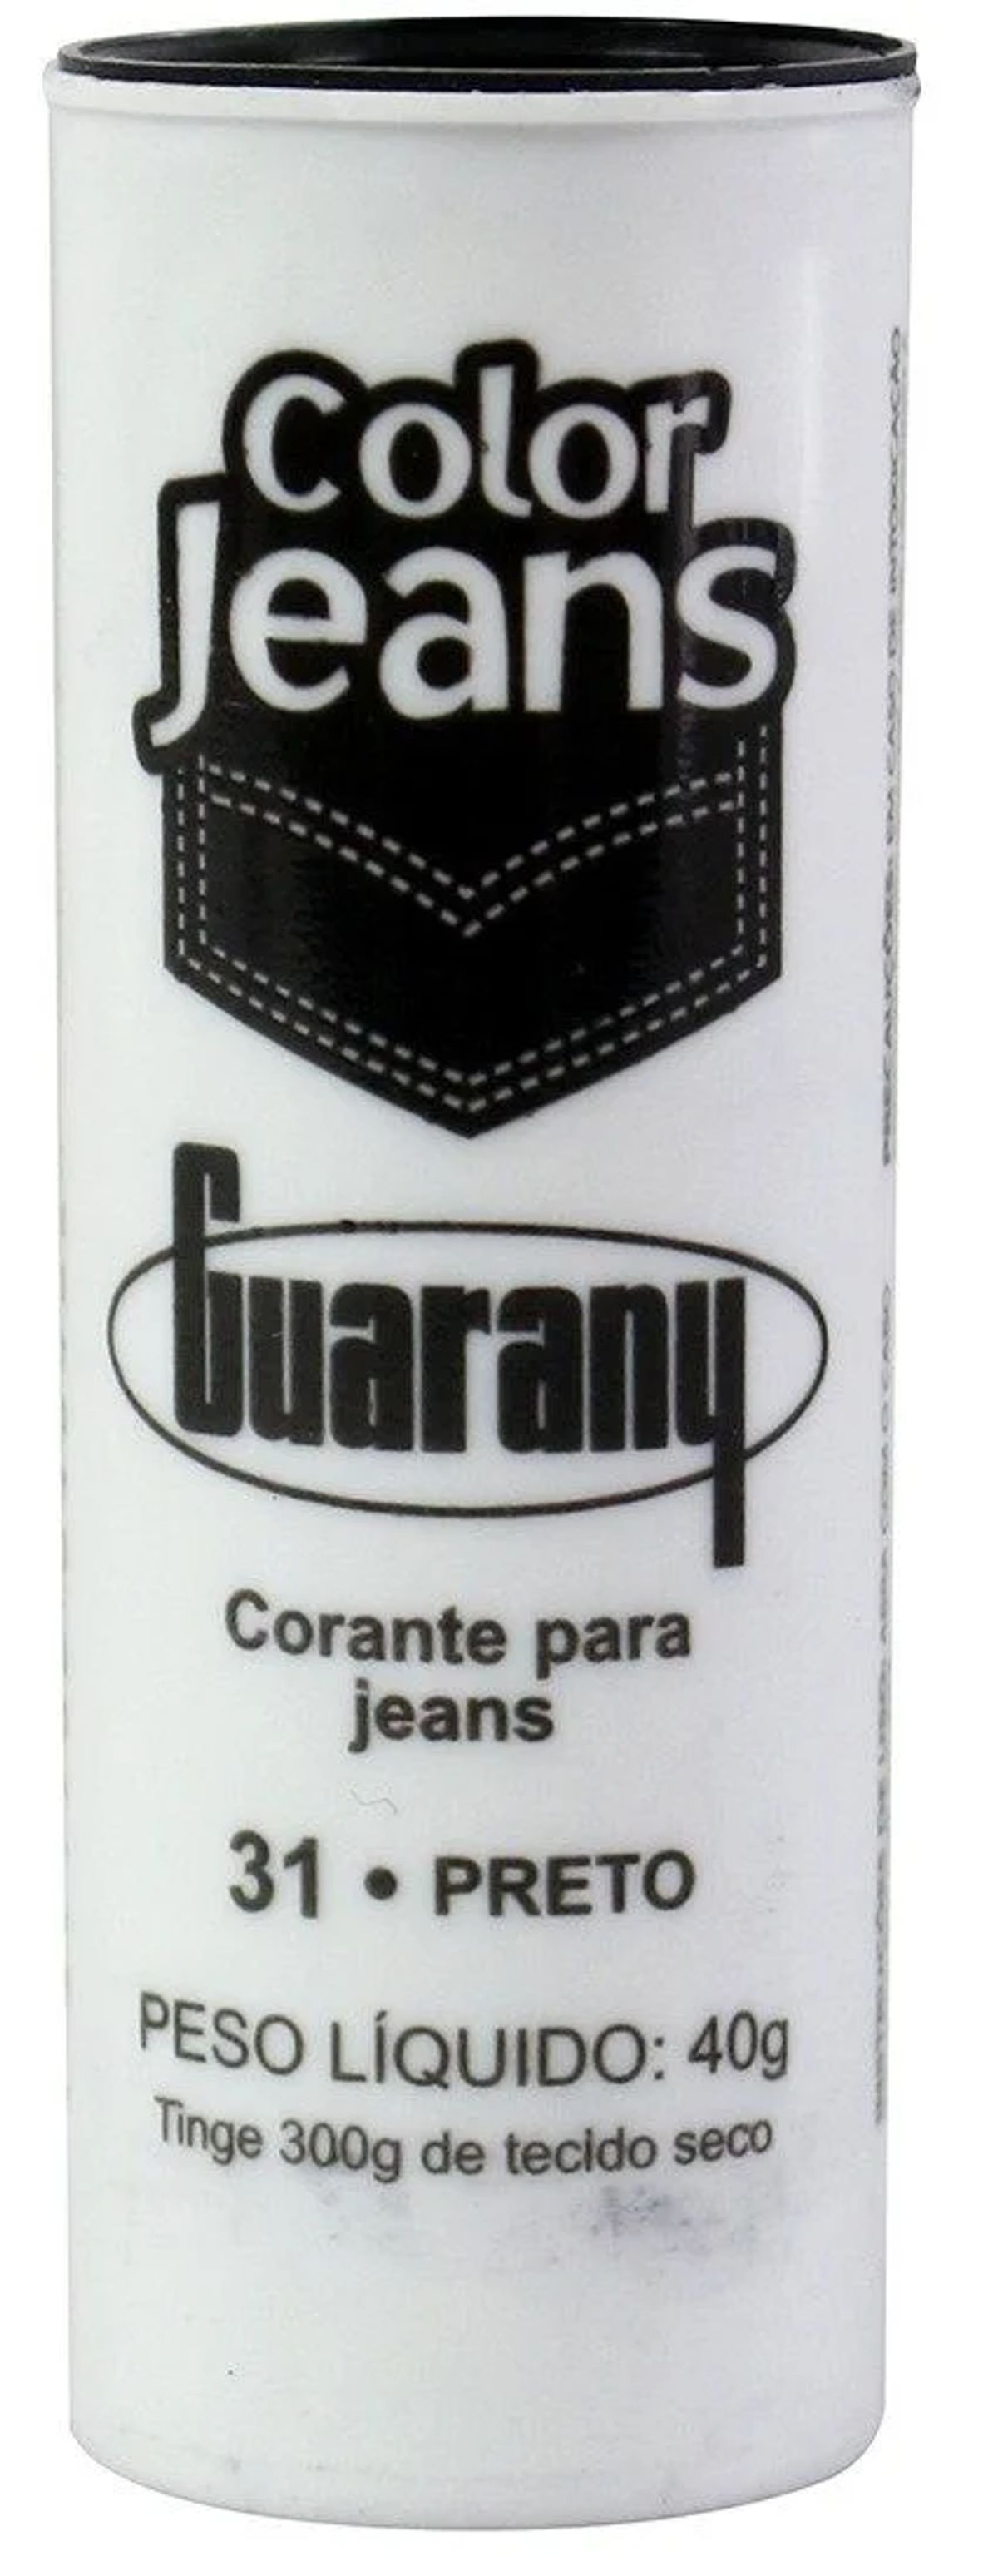 Corante Color Jeans Guarany Preto 40g